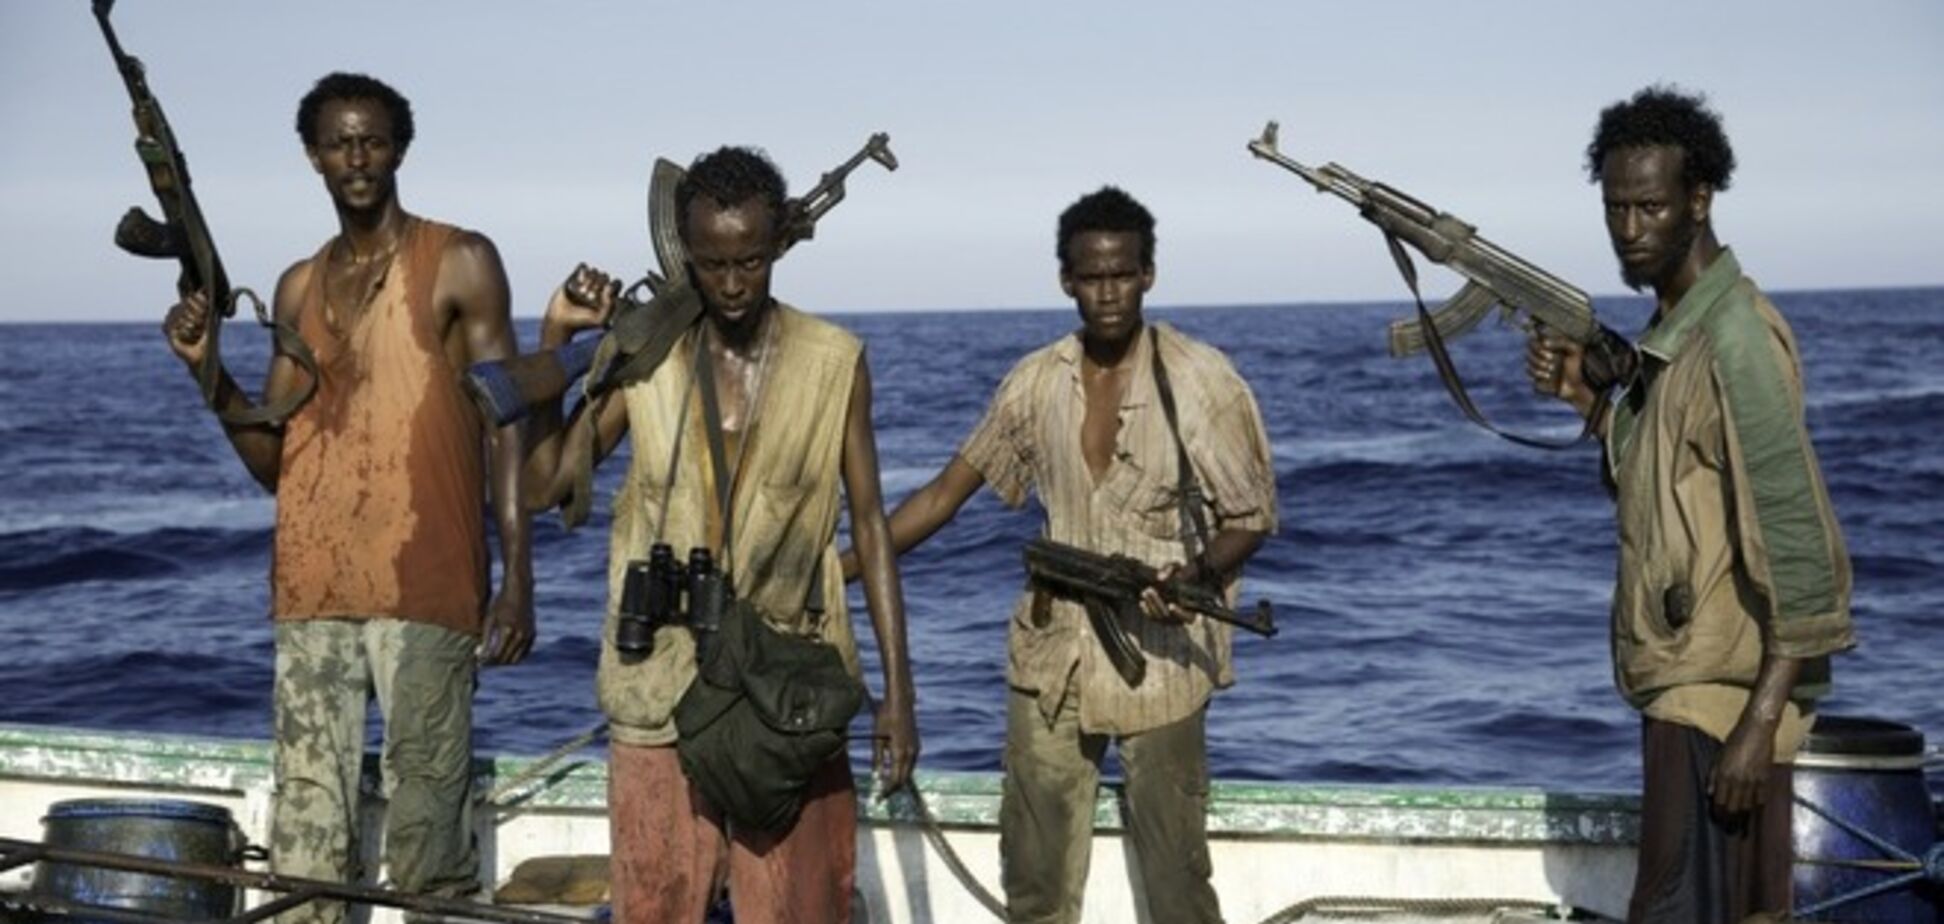 ЄСПЛ зобов'язав Францію виплатити піратам Сомалі компенсацію в € 70 тис.